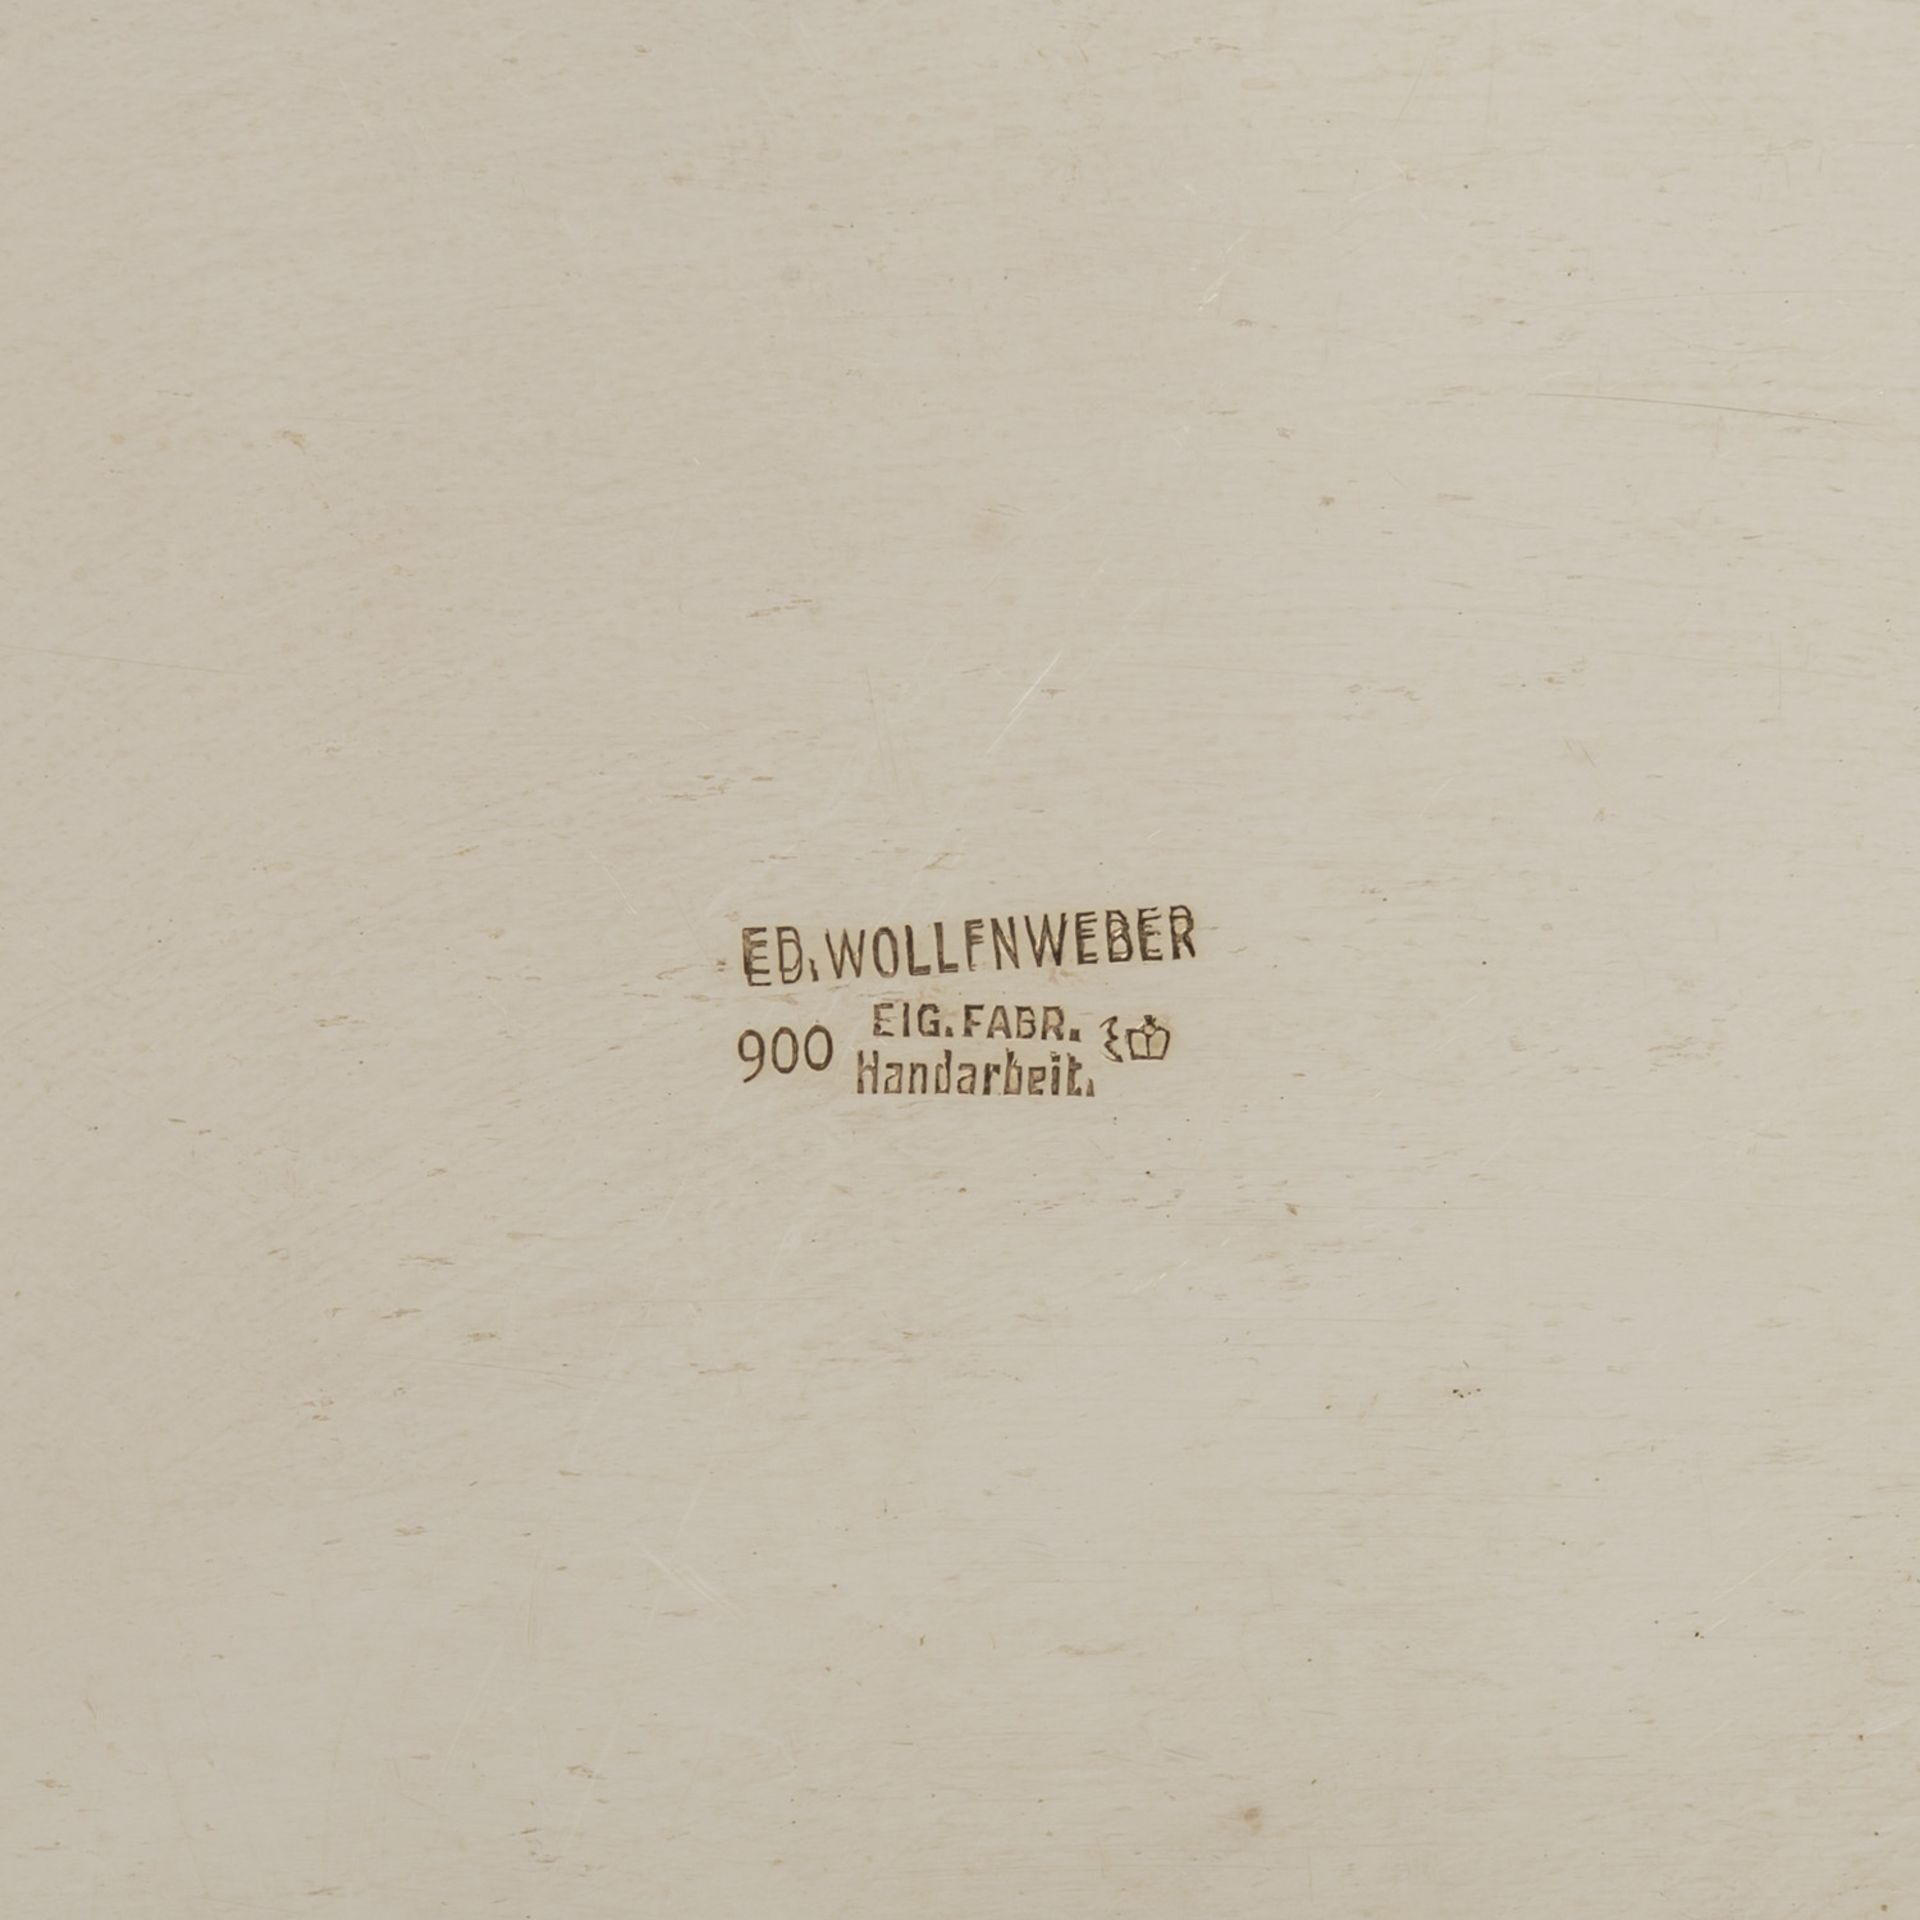 EDUARD WOLLENWEBER ovale Servierplatte, 20. Jh. - Bild 3 aus 3